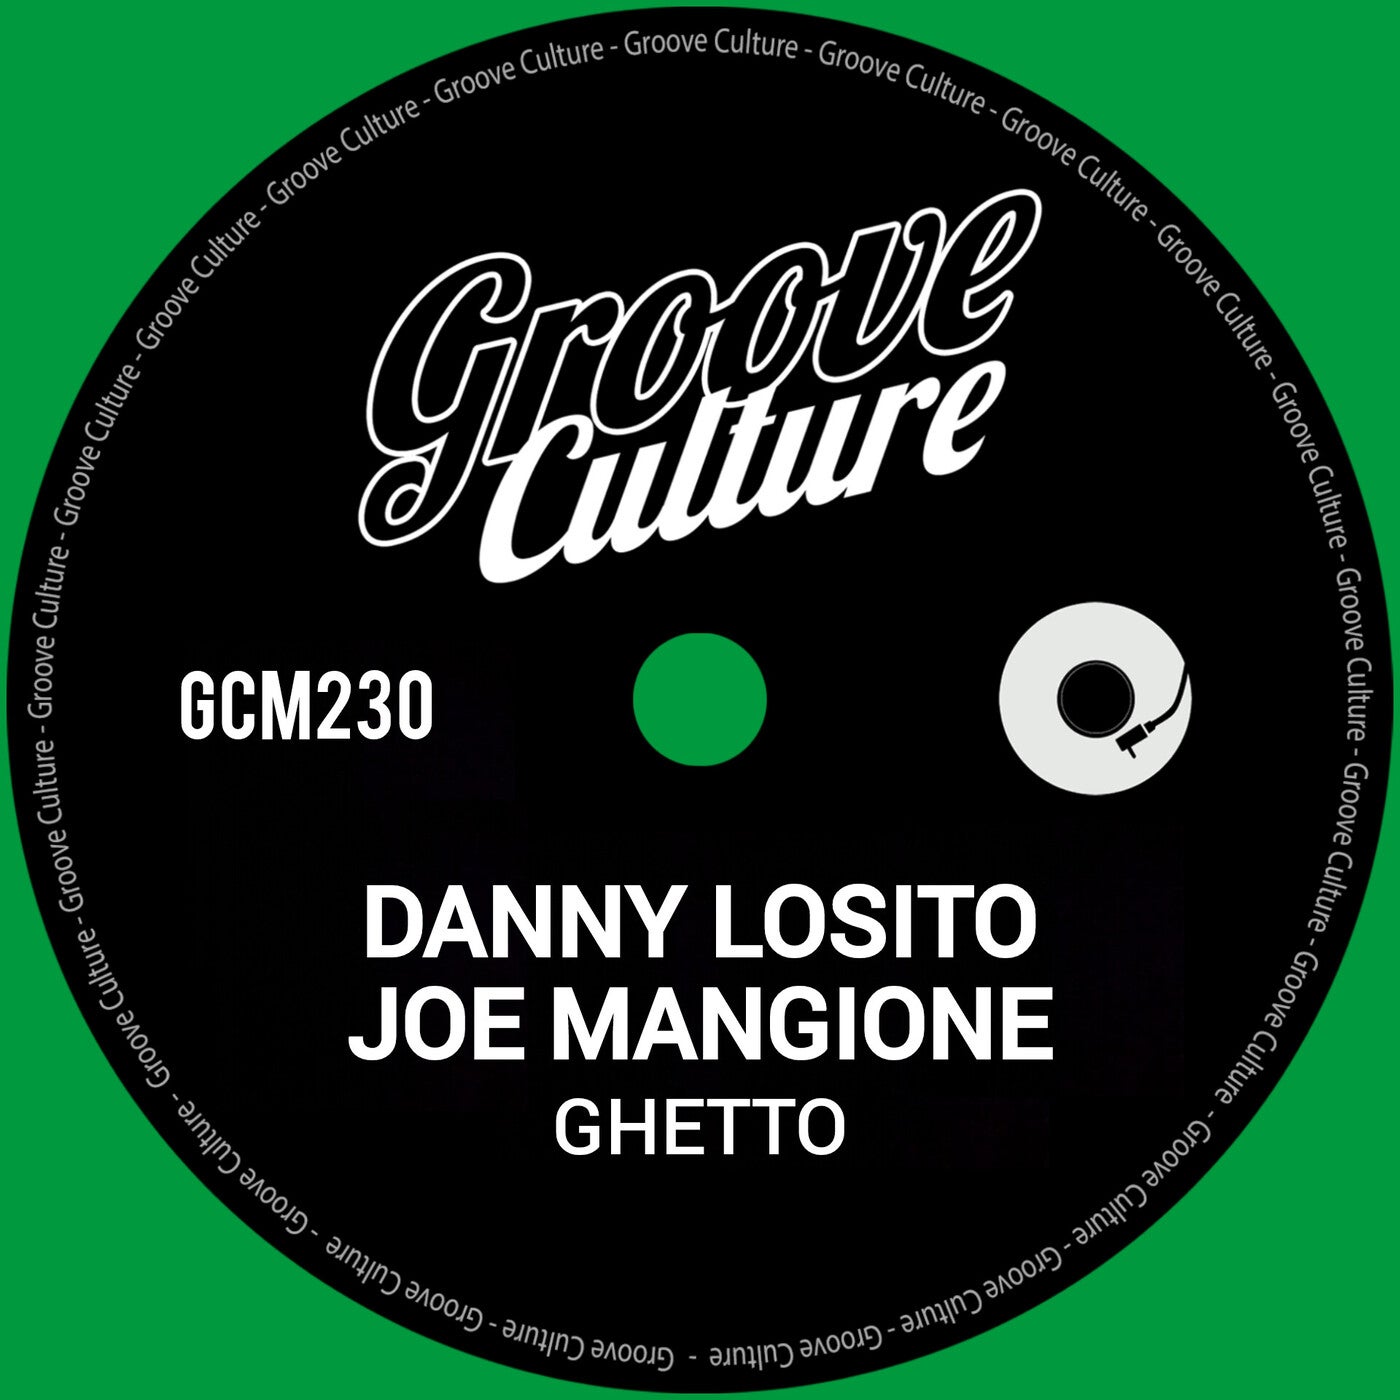 image cover: Danny Losito, Joe Mangione - Ghetto on Groove Culture